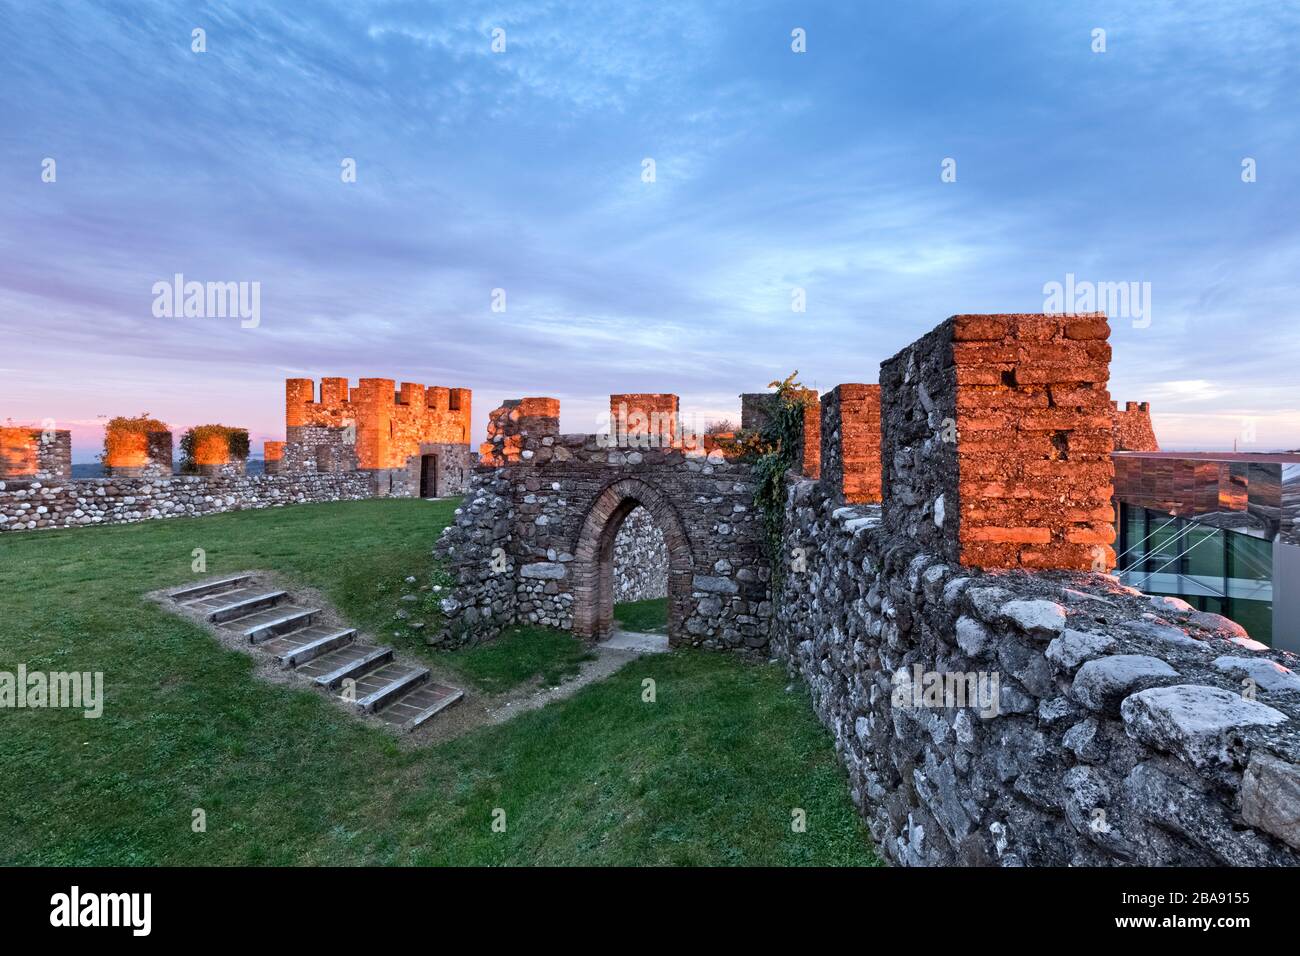 Tramonto sulle mura merlate della Rocca di Lonato. Lonato del Garda, provincia di Brescia, Lombardia, Italia, Europa. Foto Stock